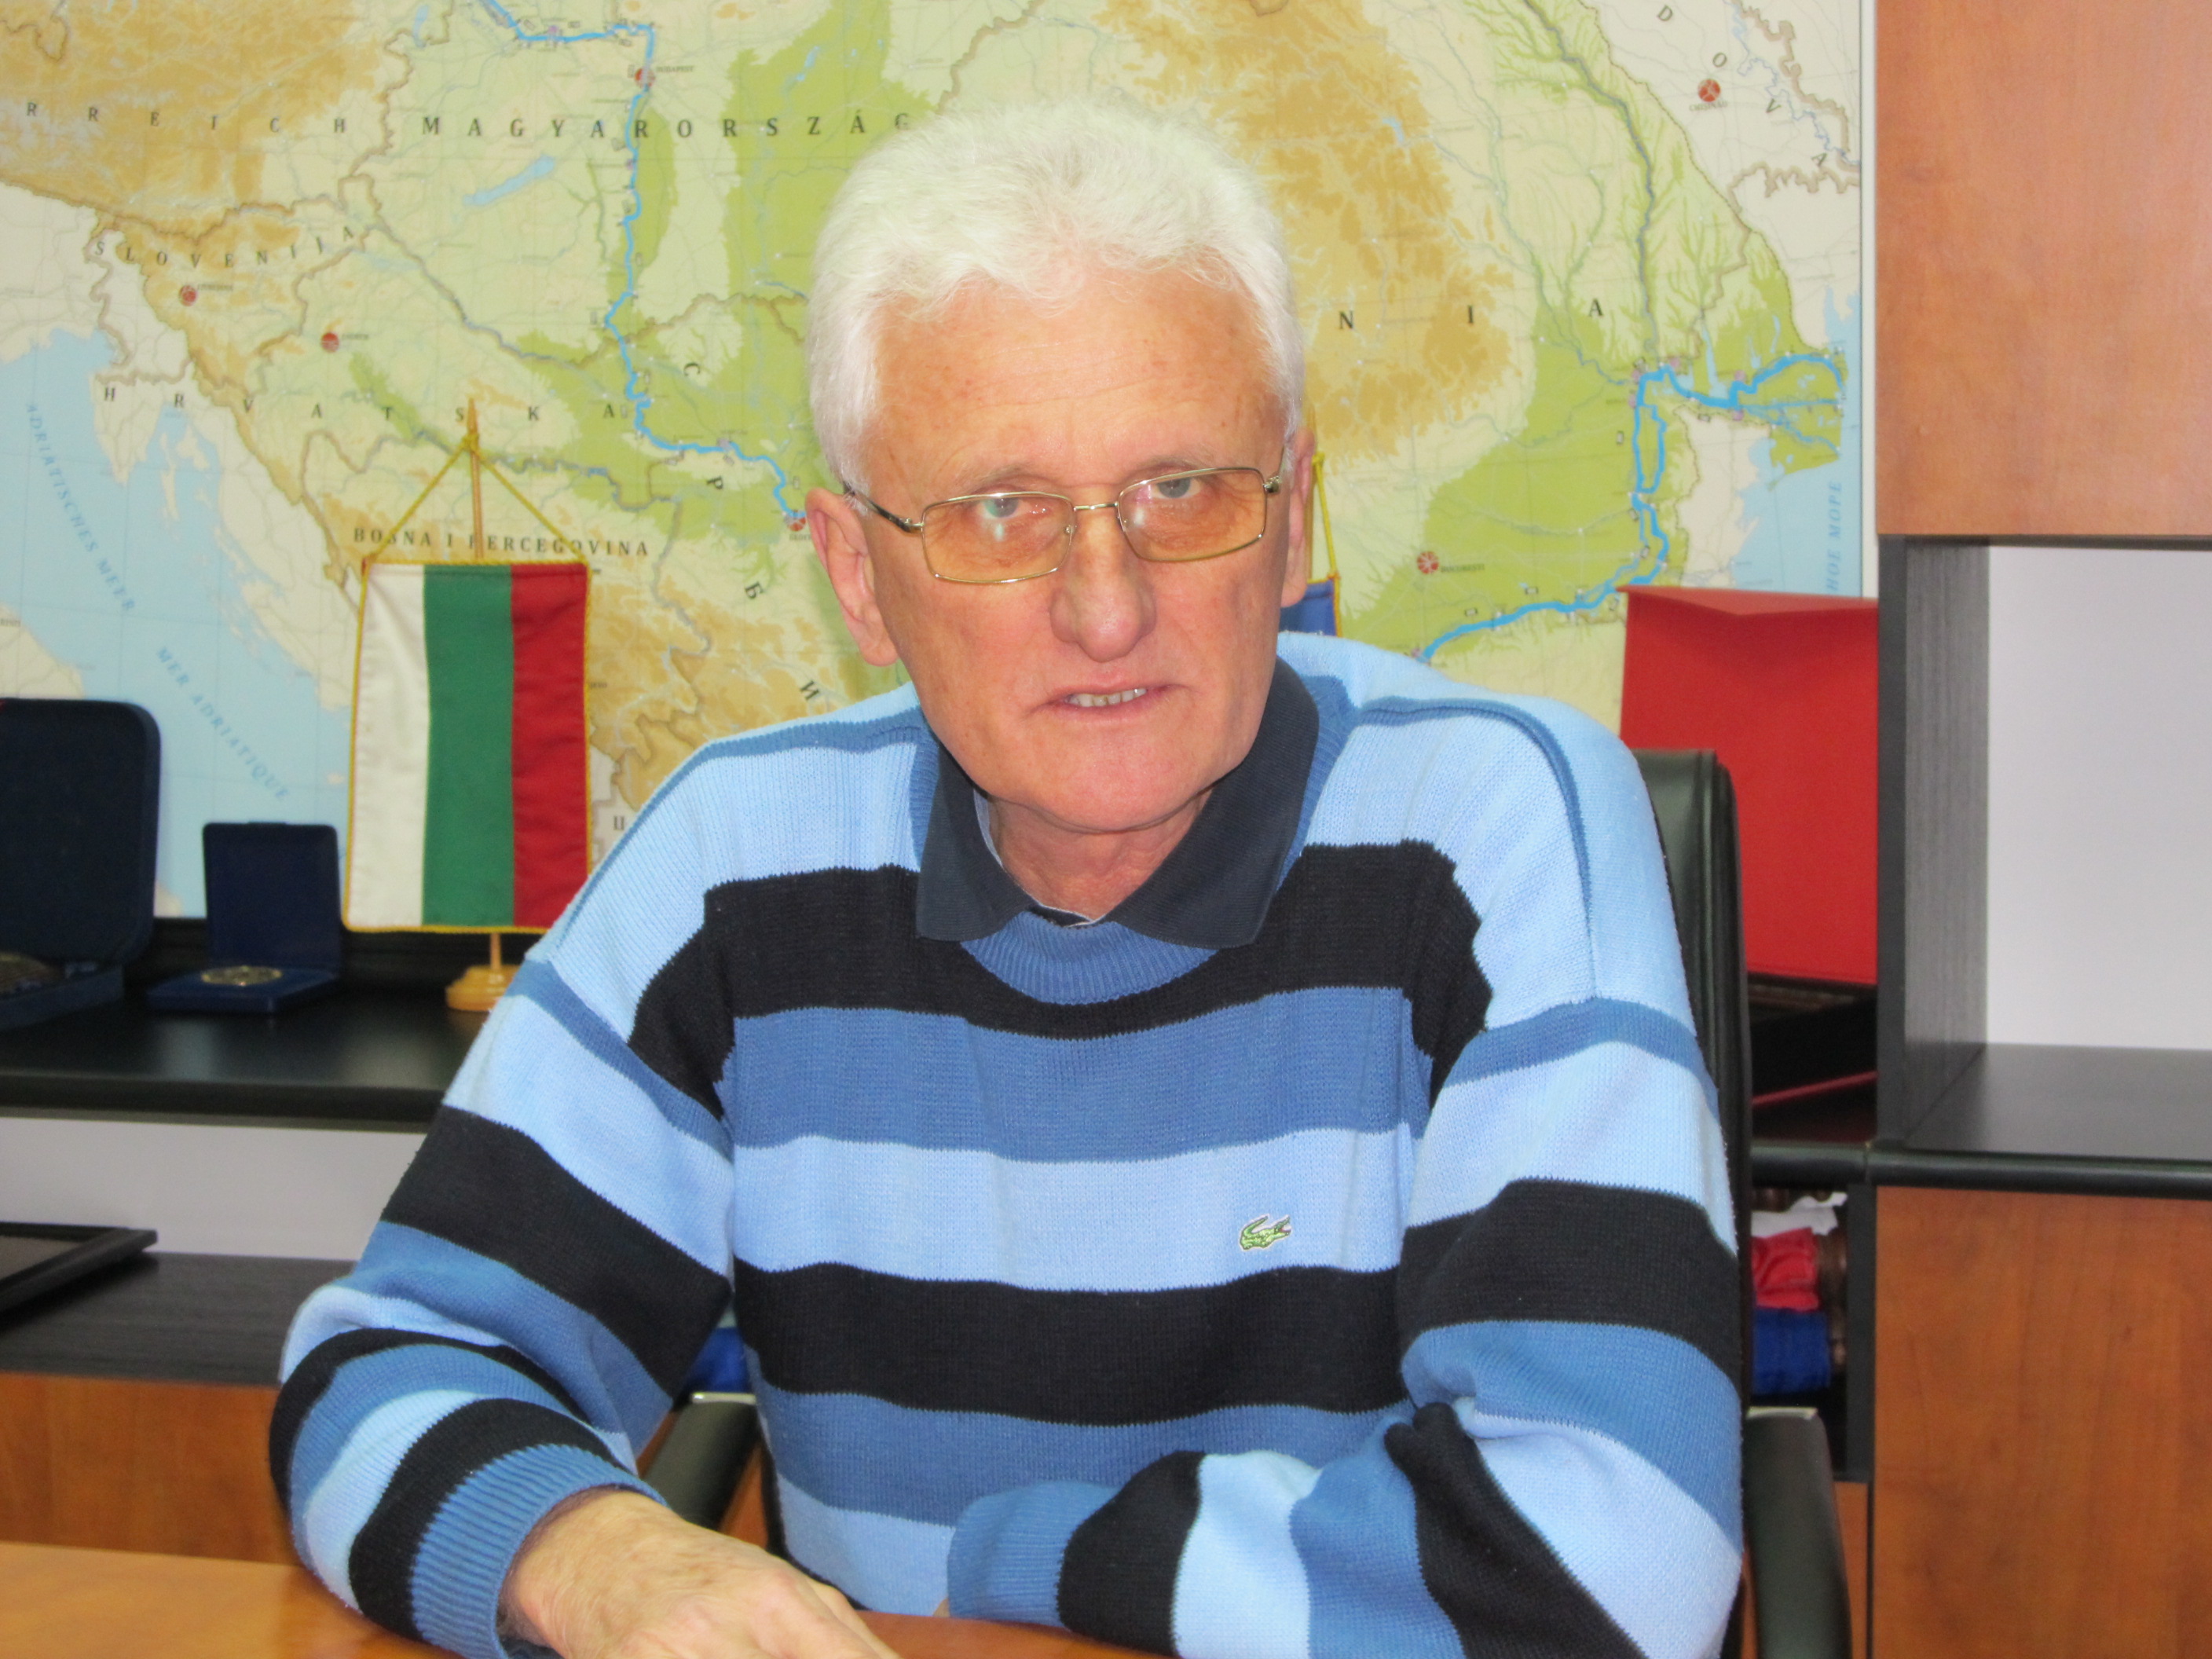 Георги Георгиев беше начело на Агенцията от началото на 90-те години